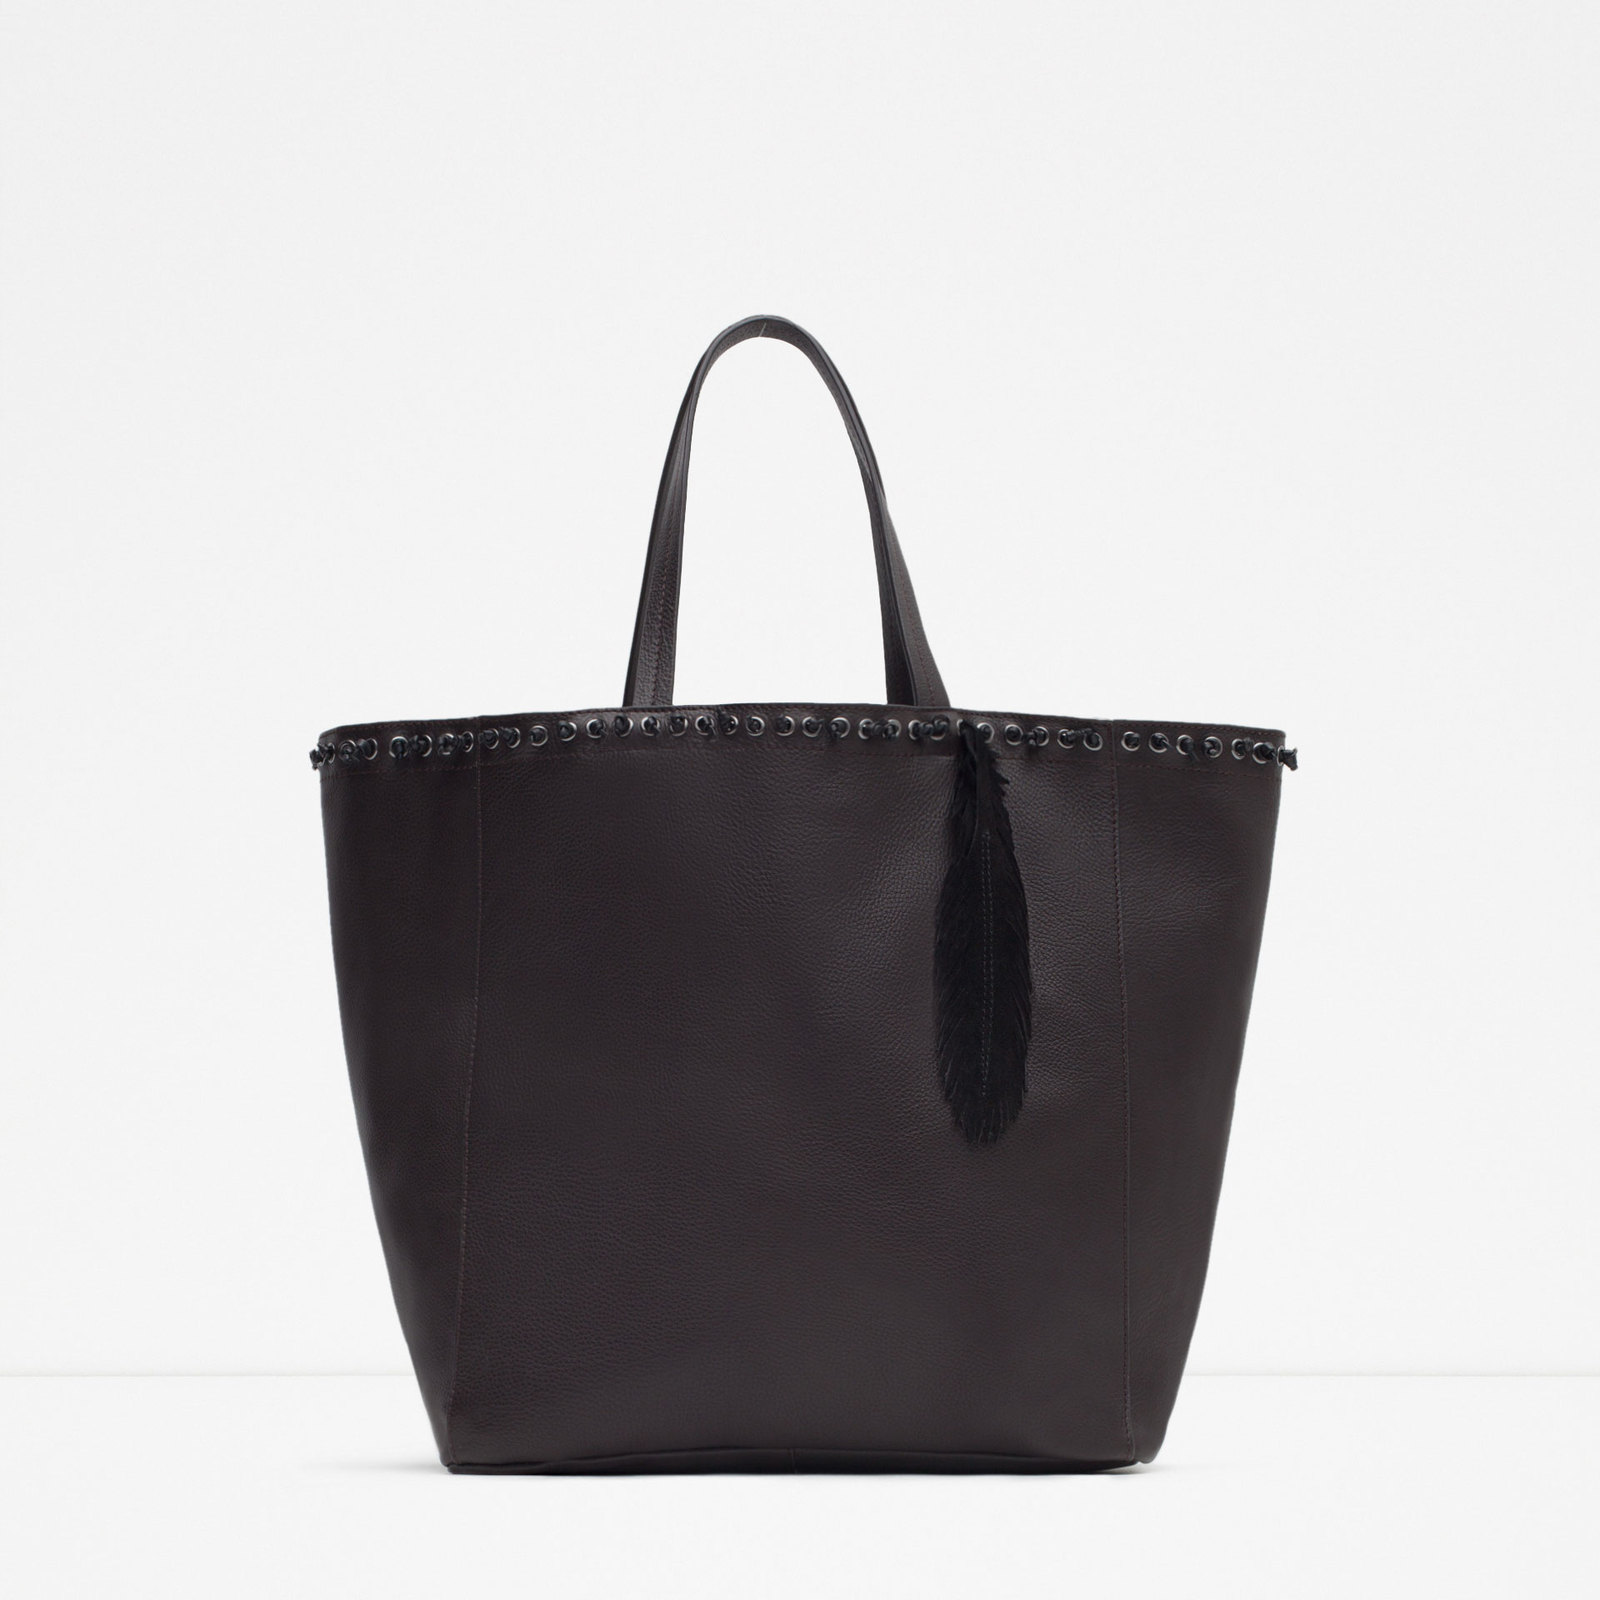 Zara csábos női fekete bevásárló táska fotója